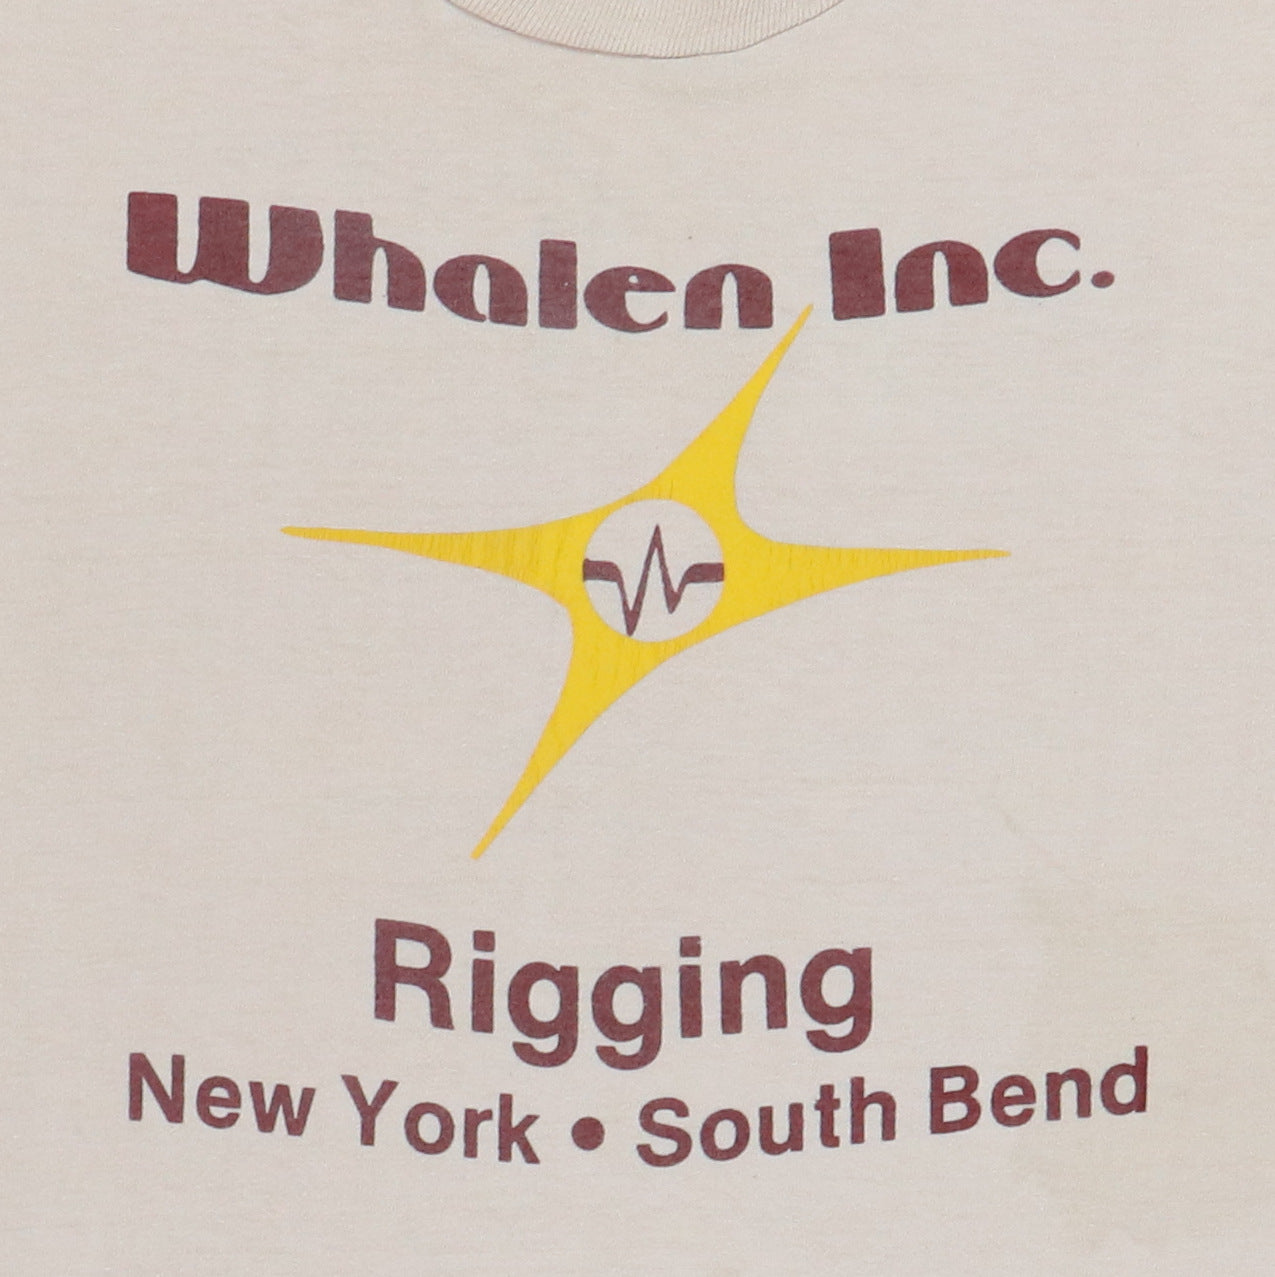 1978 Heart Whalen Rigging Crew Tour Shirt